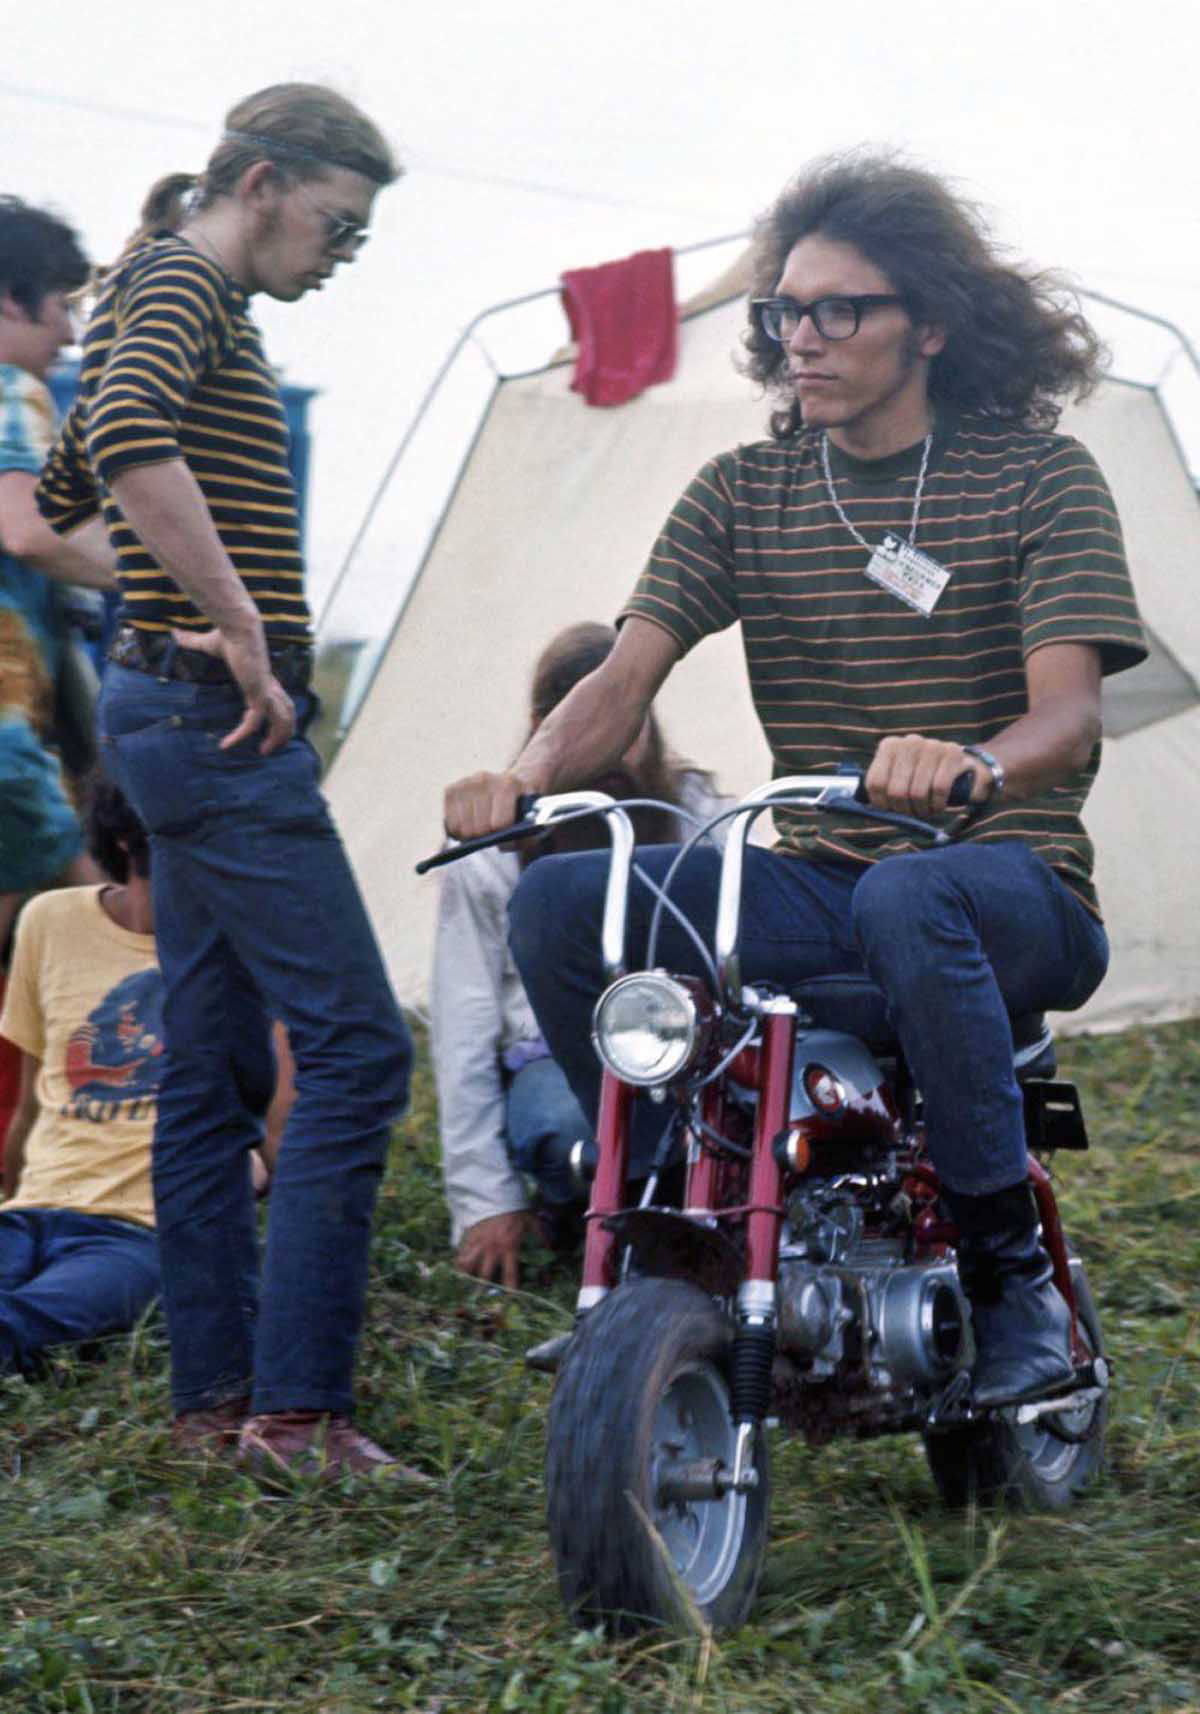 Fotos impressionantes retratam a moda rebelde de Woodstock em 1969 11